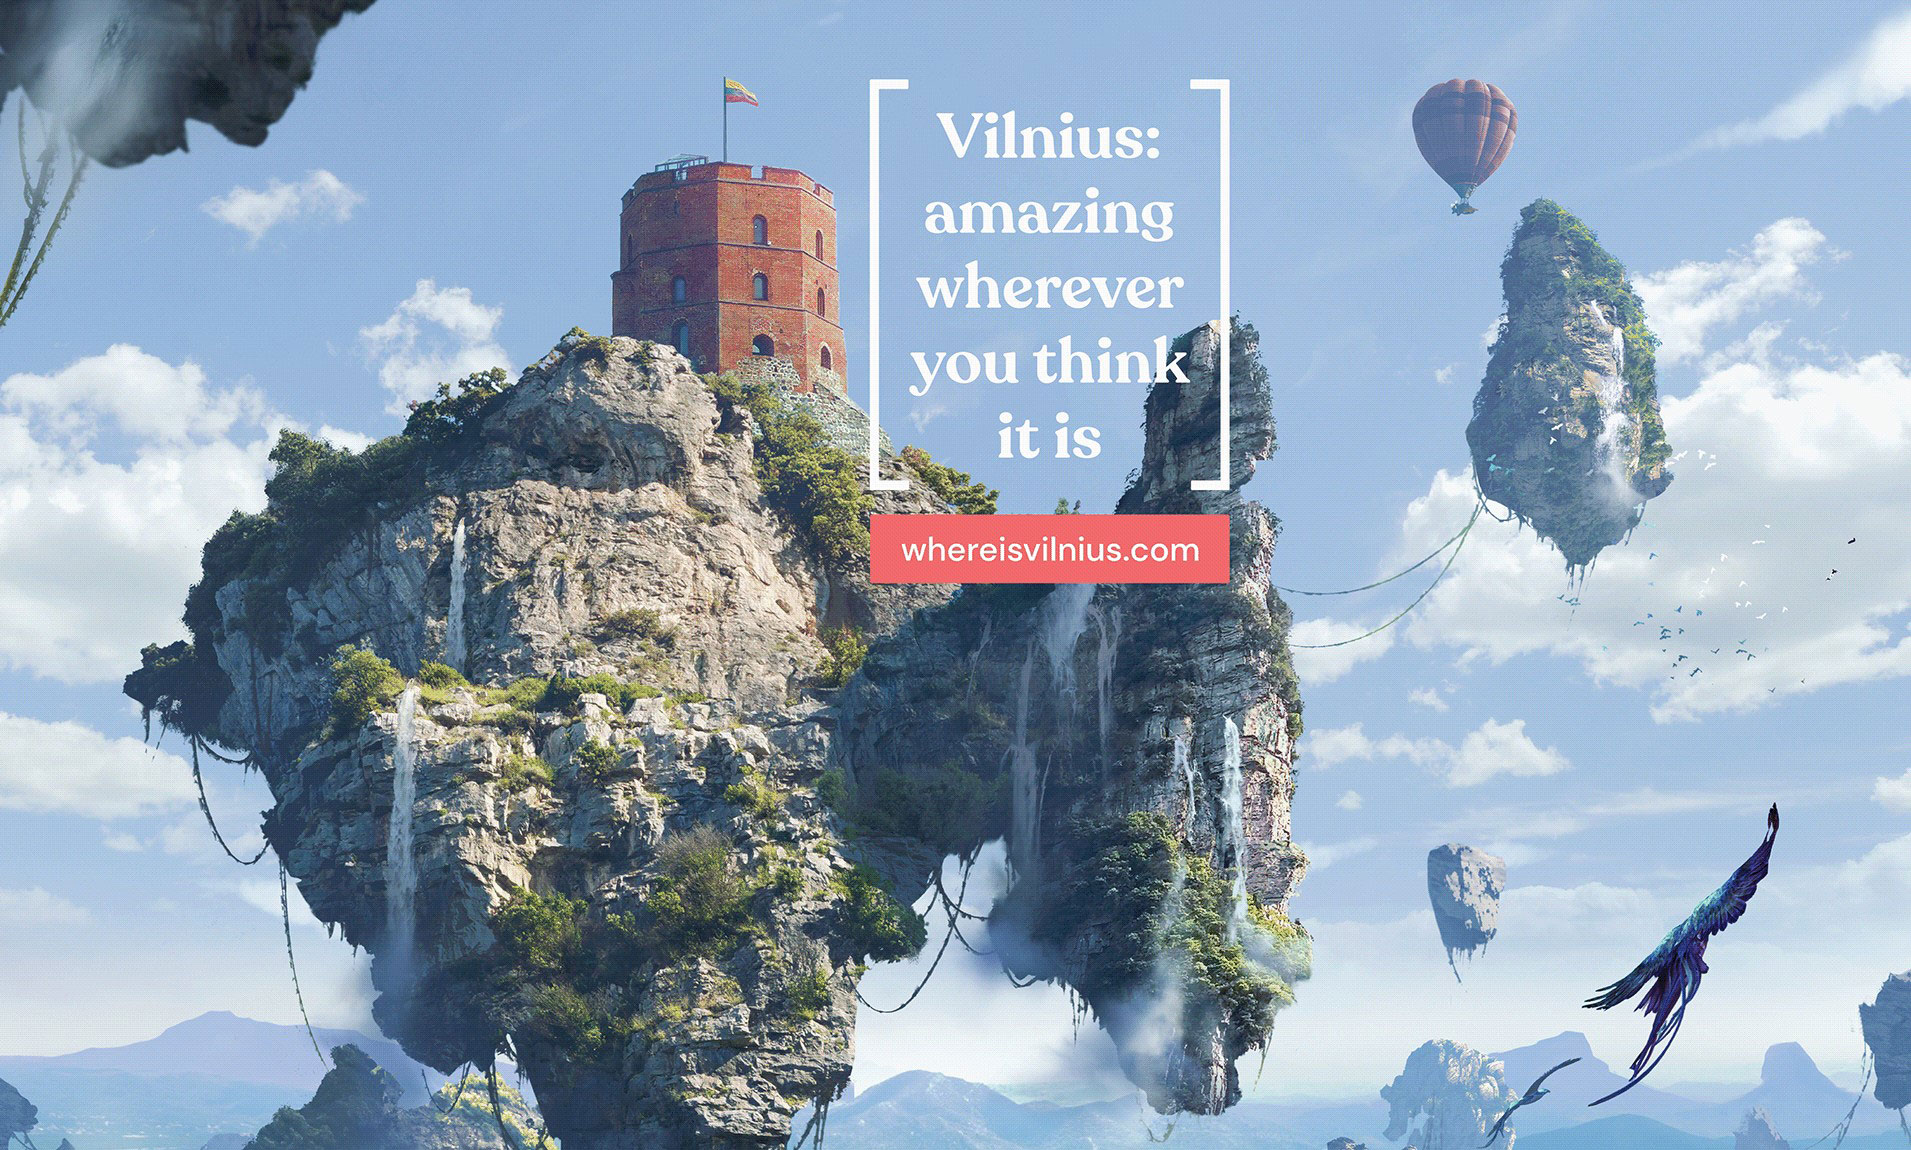 Vilniaus reklama: „Vilnius: nuostabus, kad ir kur, jūsų manymu, jis būtų“